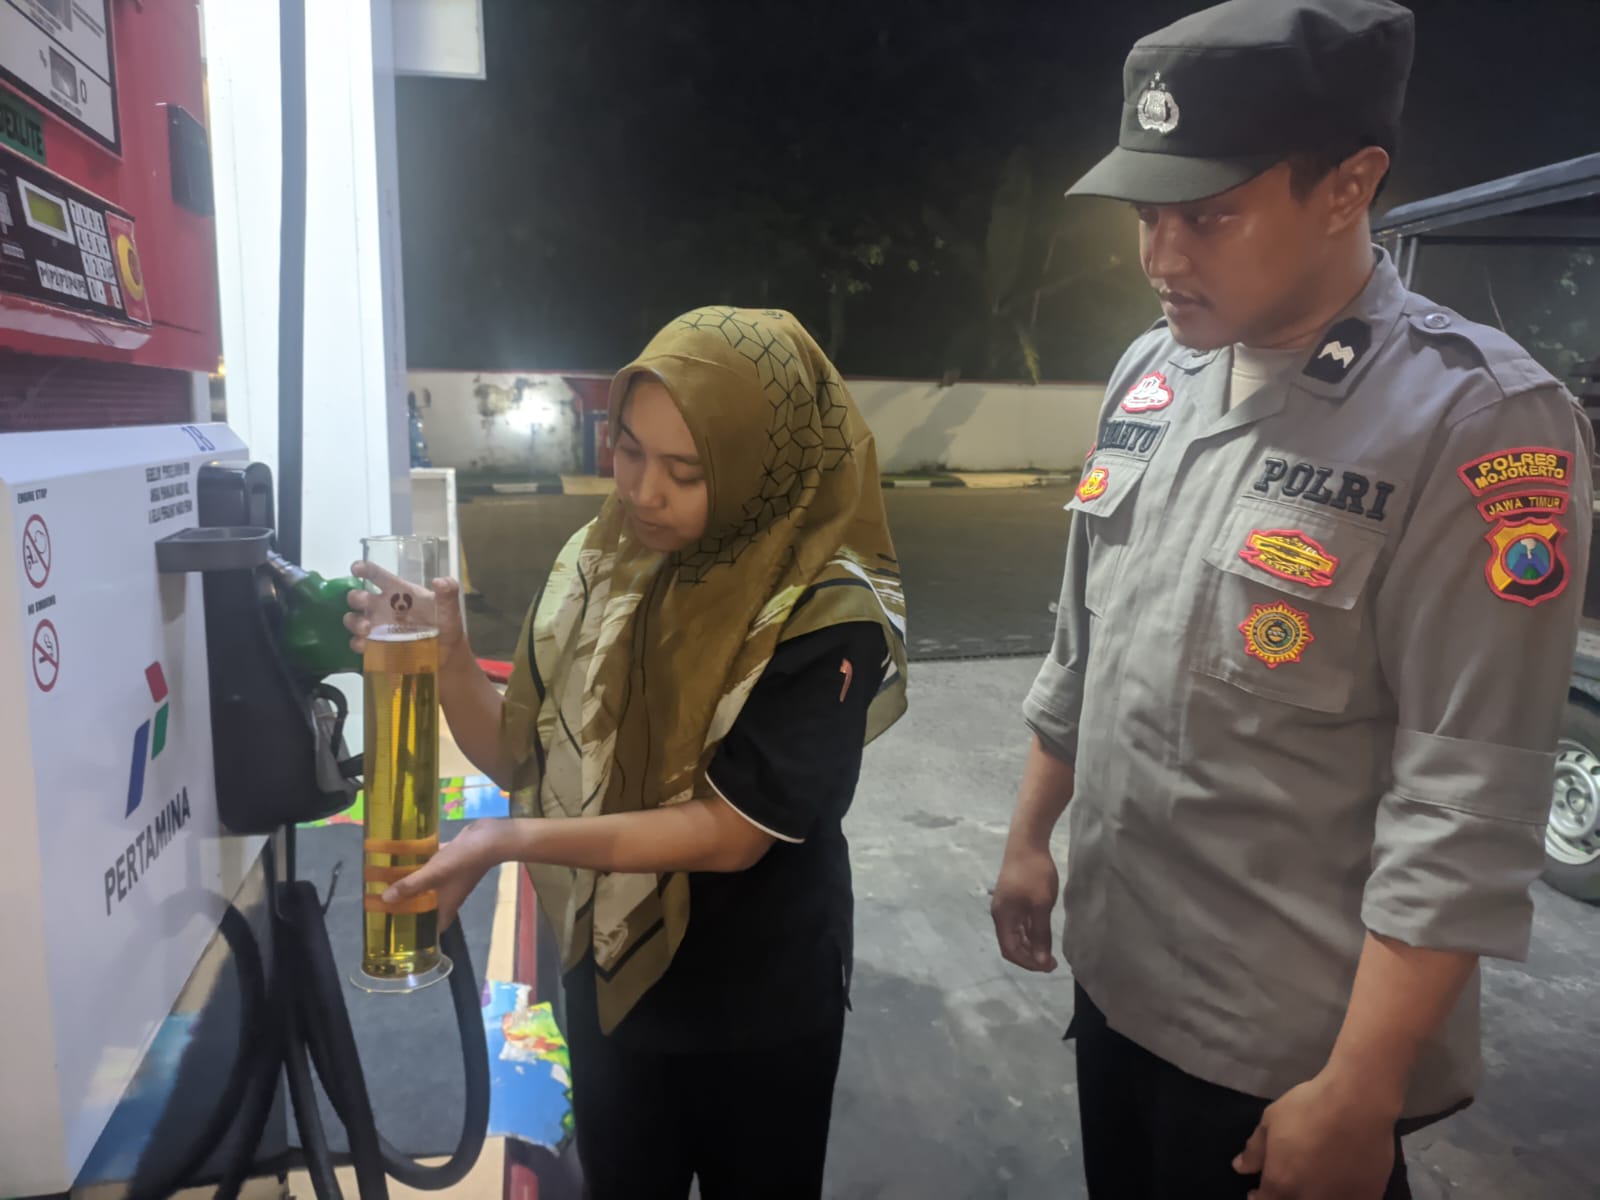 Antisipasi Kecurangan Penjualan BBM, Polsek Dlanggu Cek Langsung Takaran Liter di SPBU